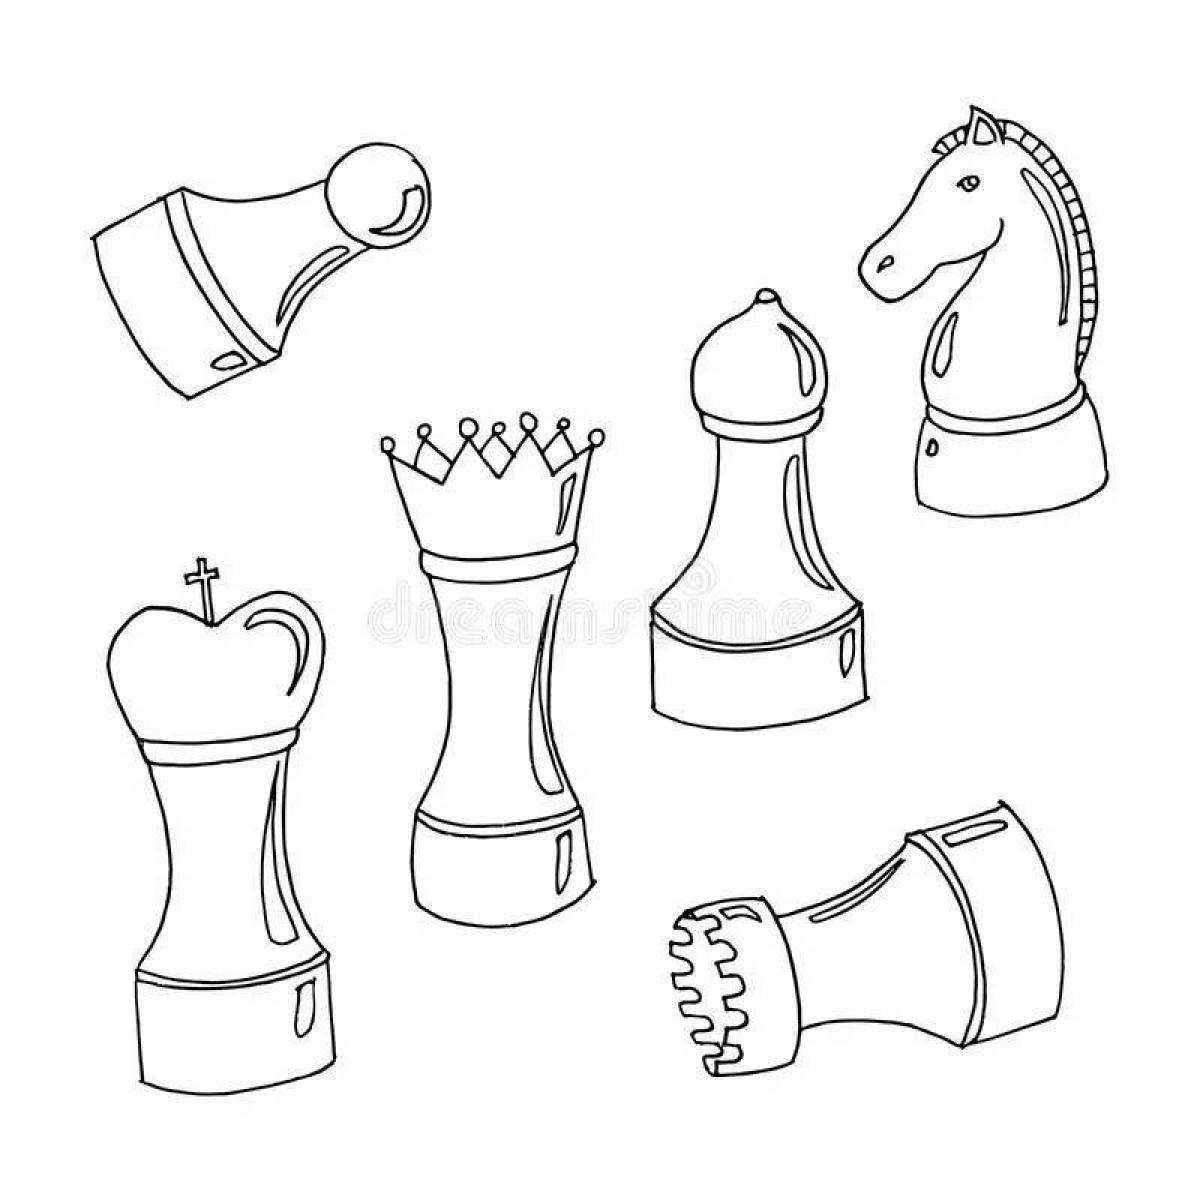 Раскраска благородный шахматный рыцарь